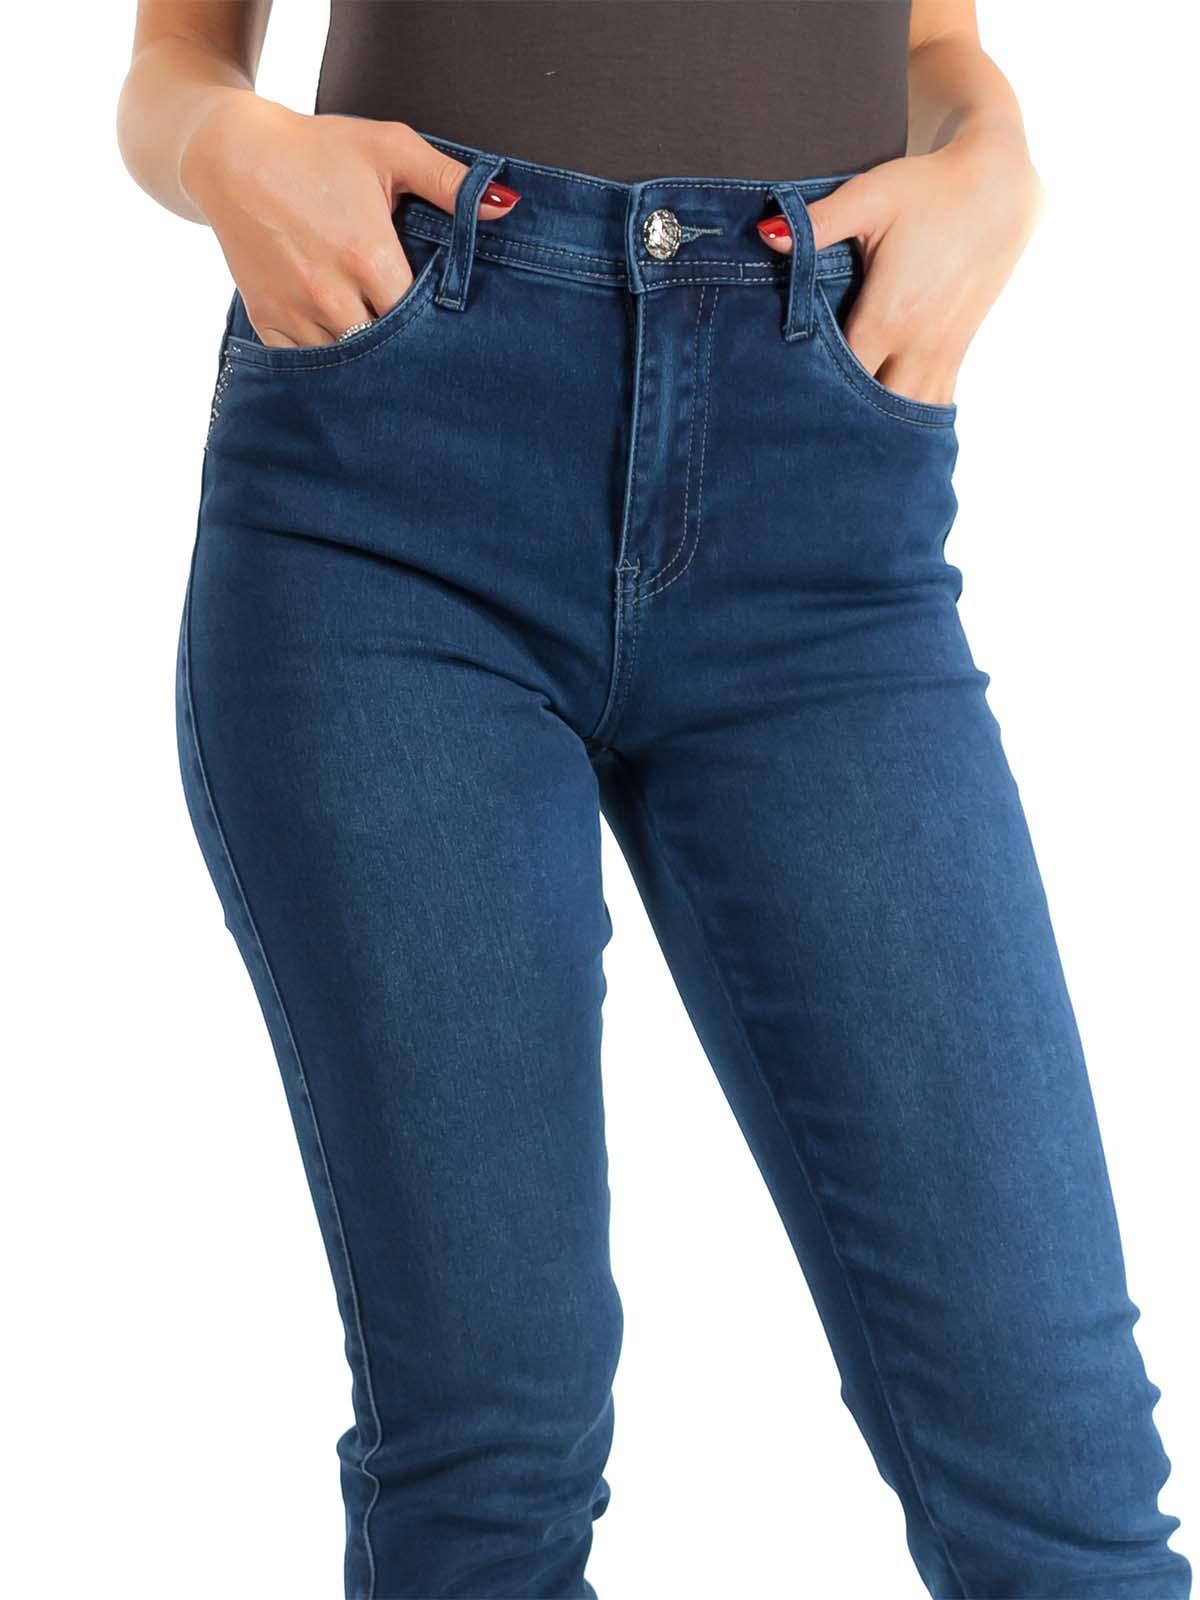 Emanuela Costa Jeans a Sigaretta Donna in Denim Cotone con Elastico Taglia conformata